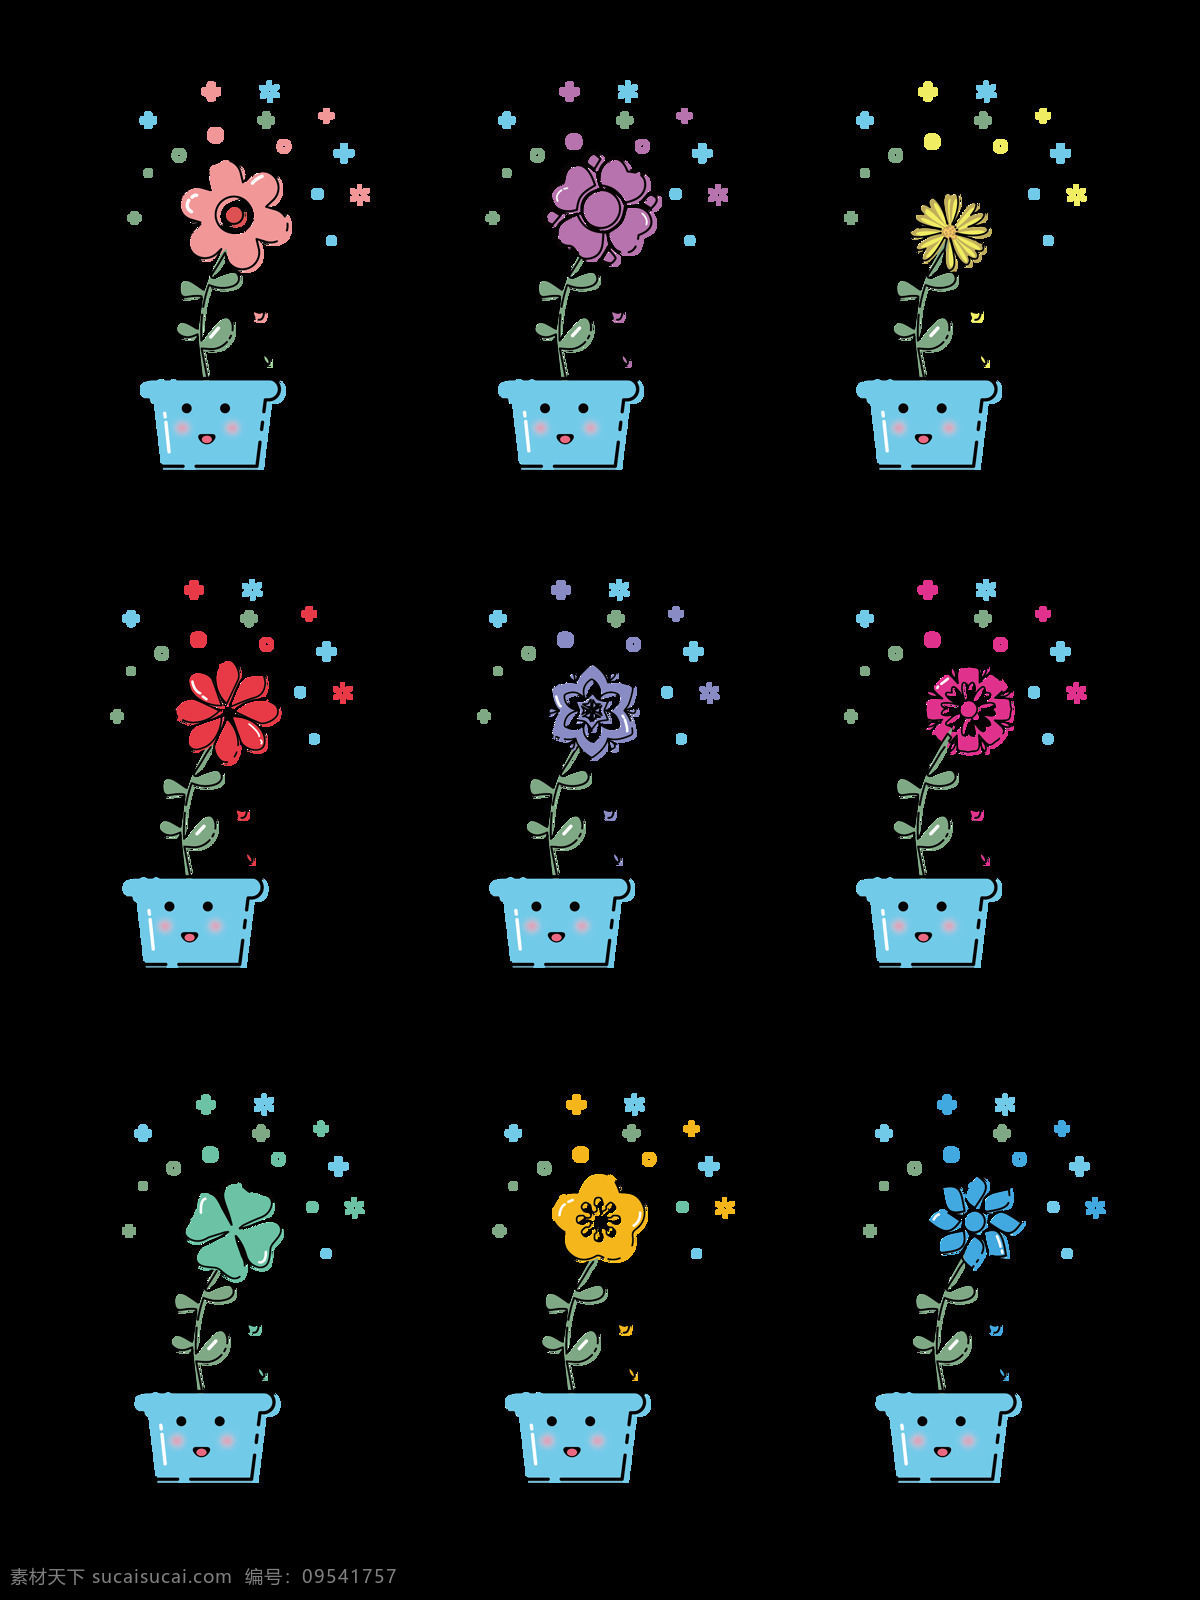 mbe 风格 可爱 创意 图标 扁平化 花卉 植物 创意图标